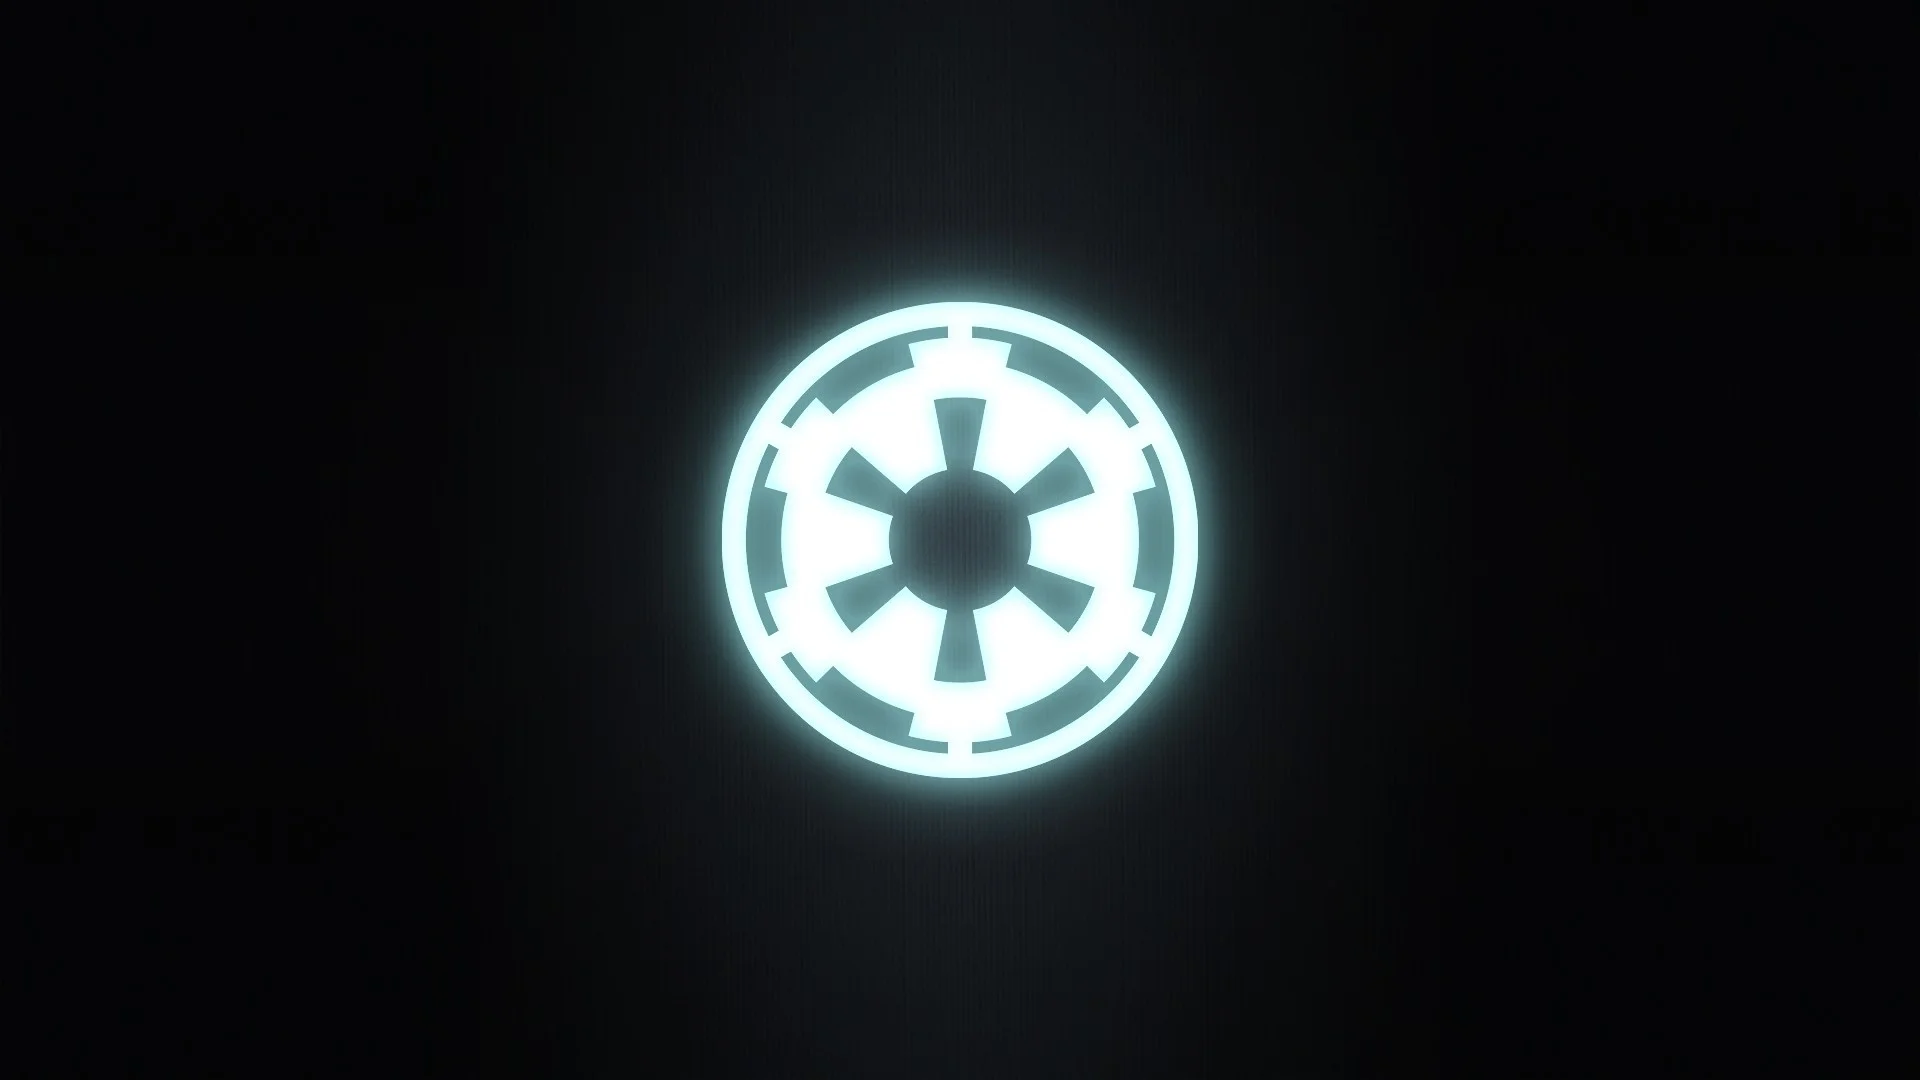 Star Wars Empire Logo Wallpaper – WallpaperSafari